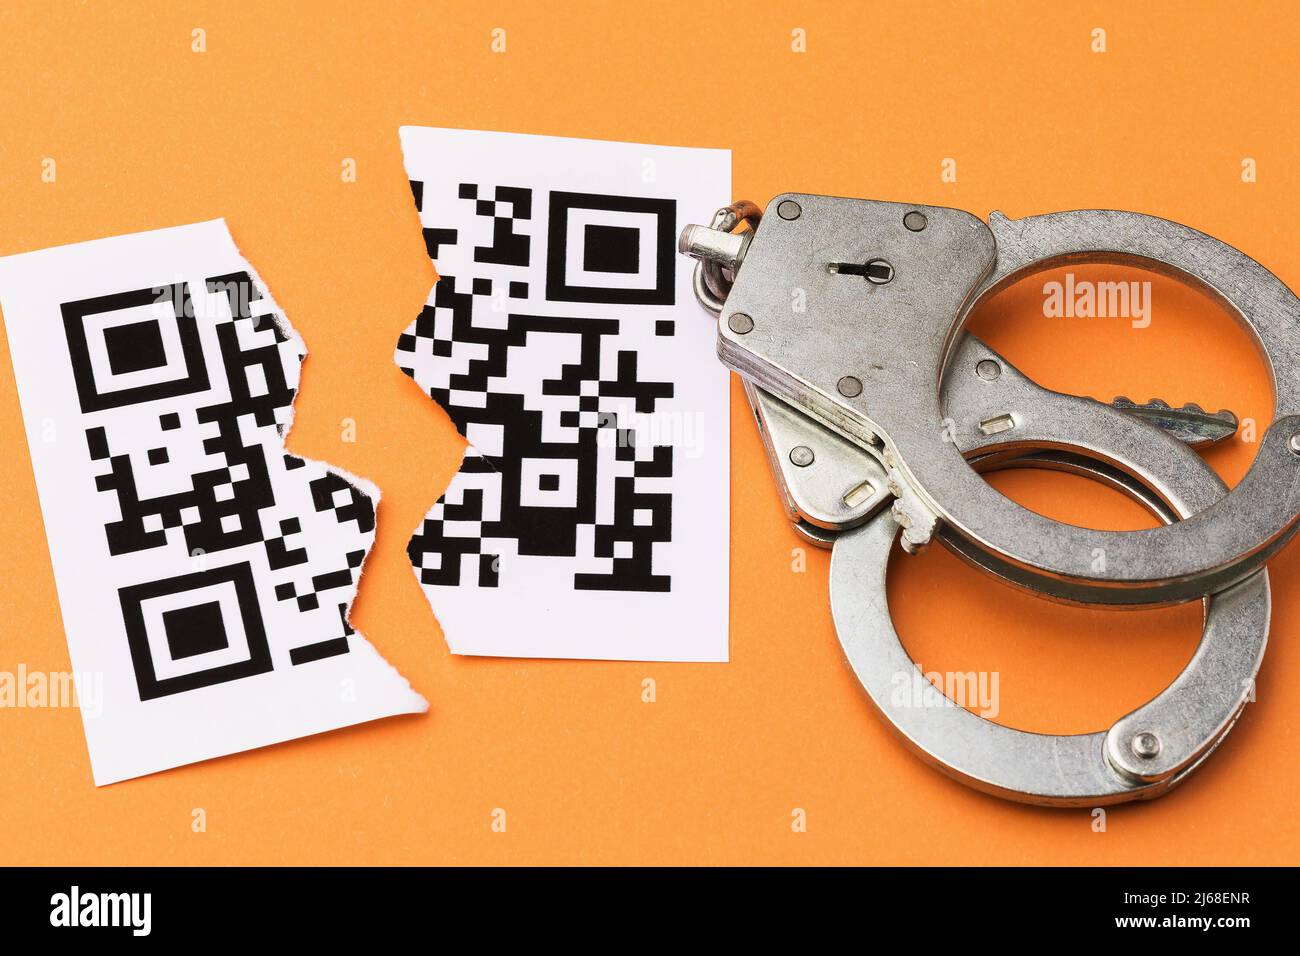 Manette e un foglio con un codice a barre strappato a metà, il concetto di punizione per la contraffazione codici QR, vista dall'alto Foto Stock